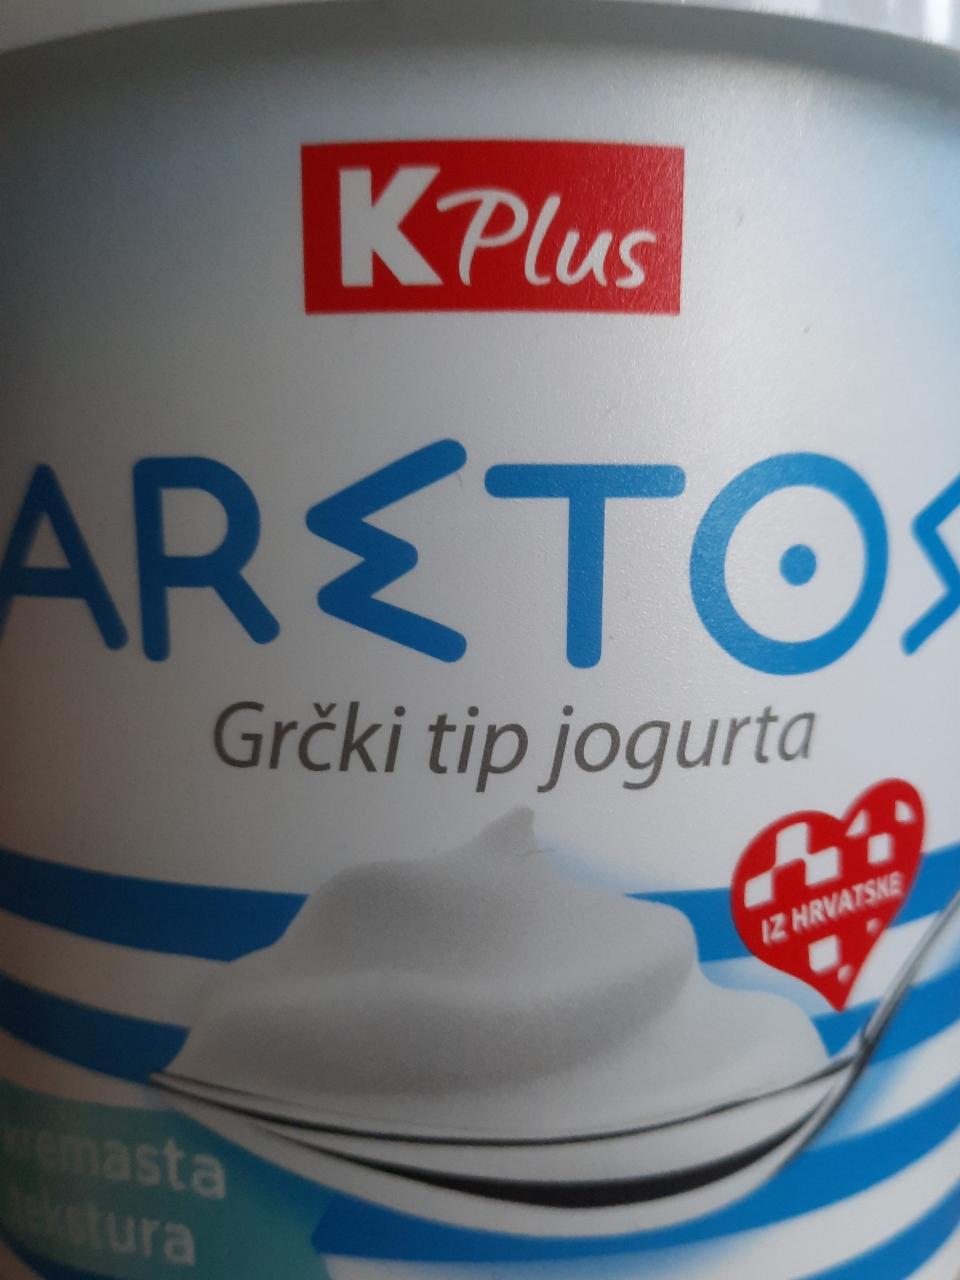 Fotografie - Aretos grčki tip jogurta (řecký jogurt) KPlus